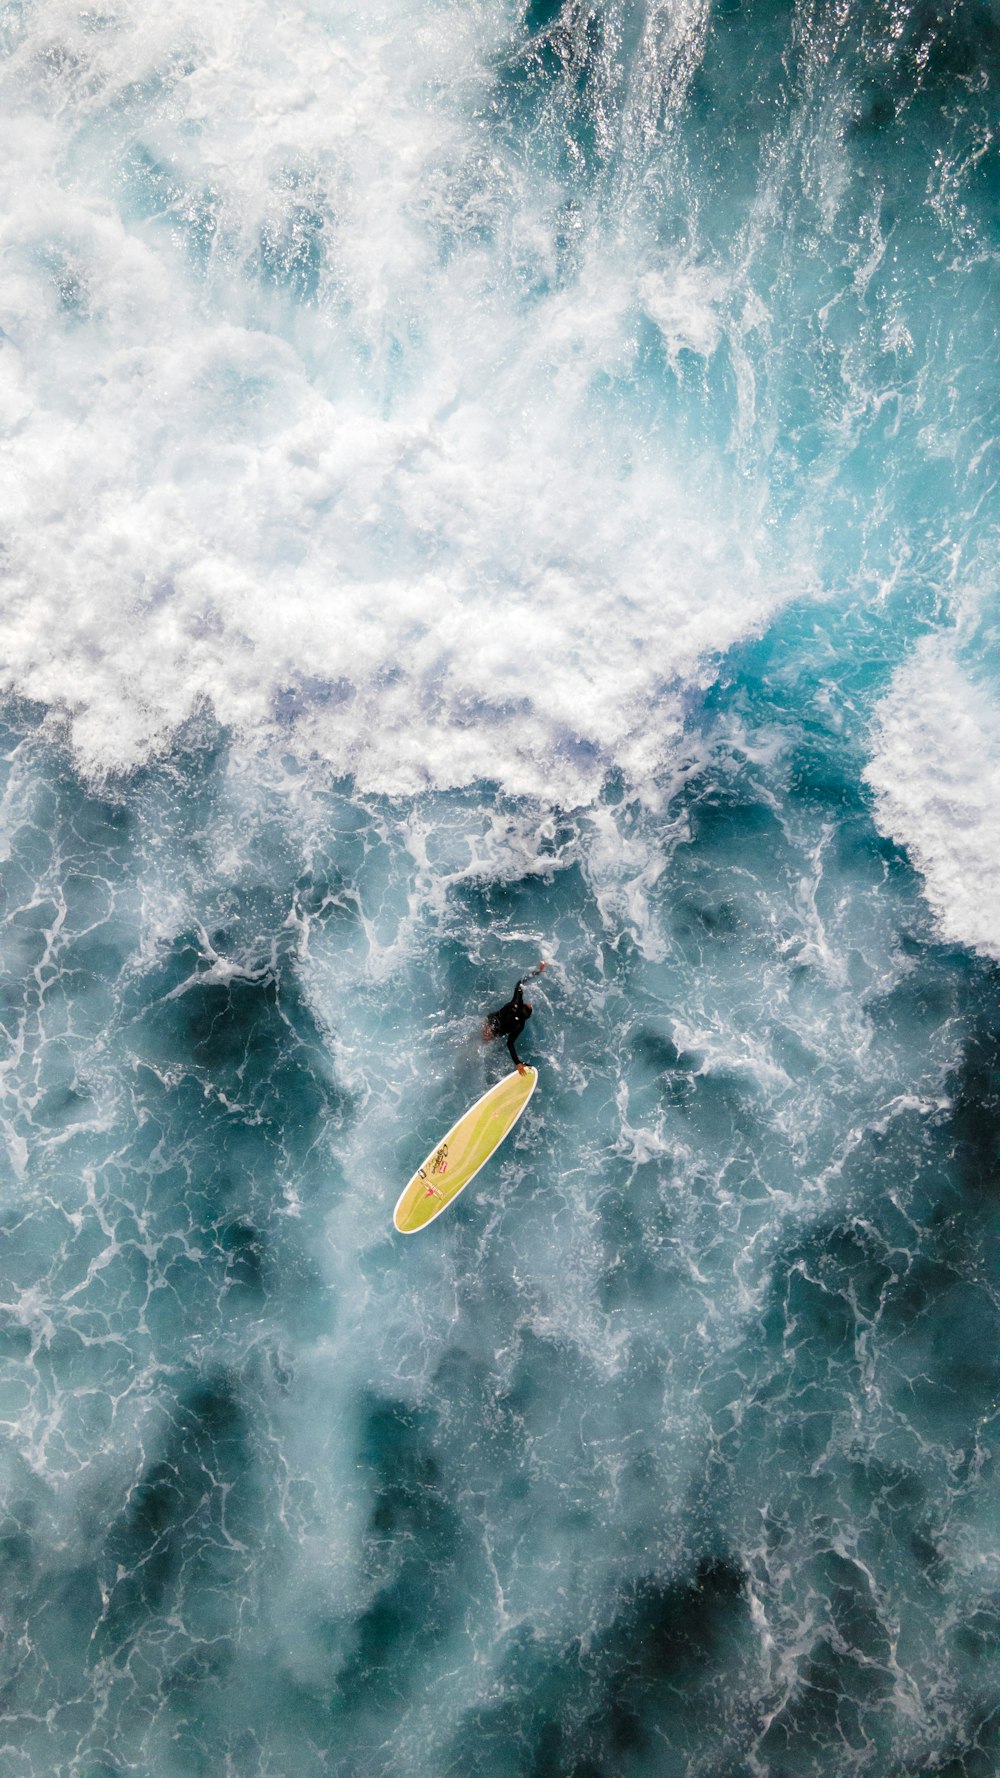 Mann im schwarzen Neoprenanzug Surfen auf Meereswellen tagsüber